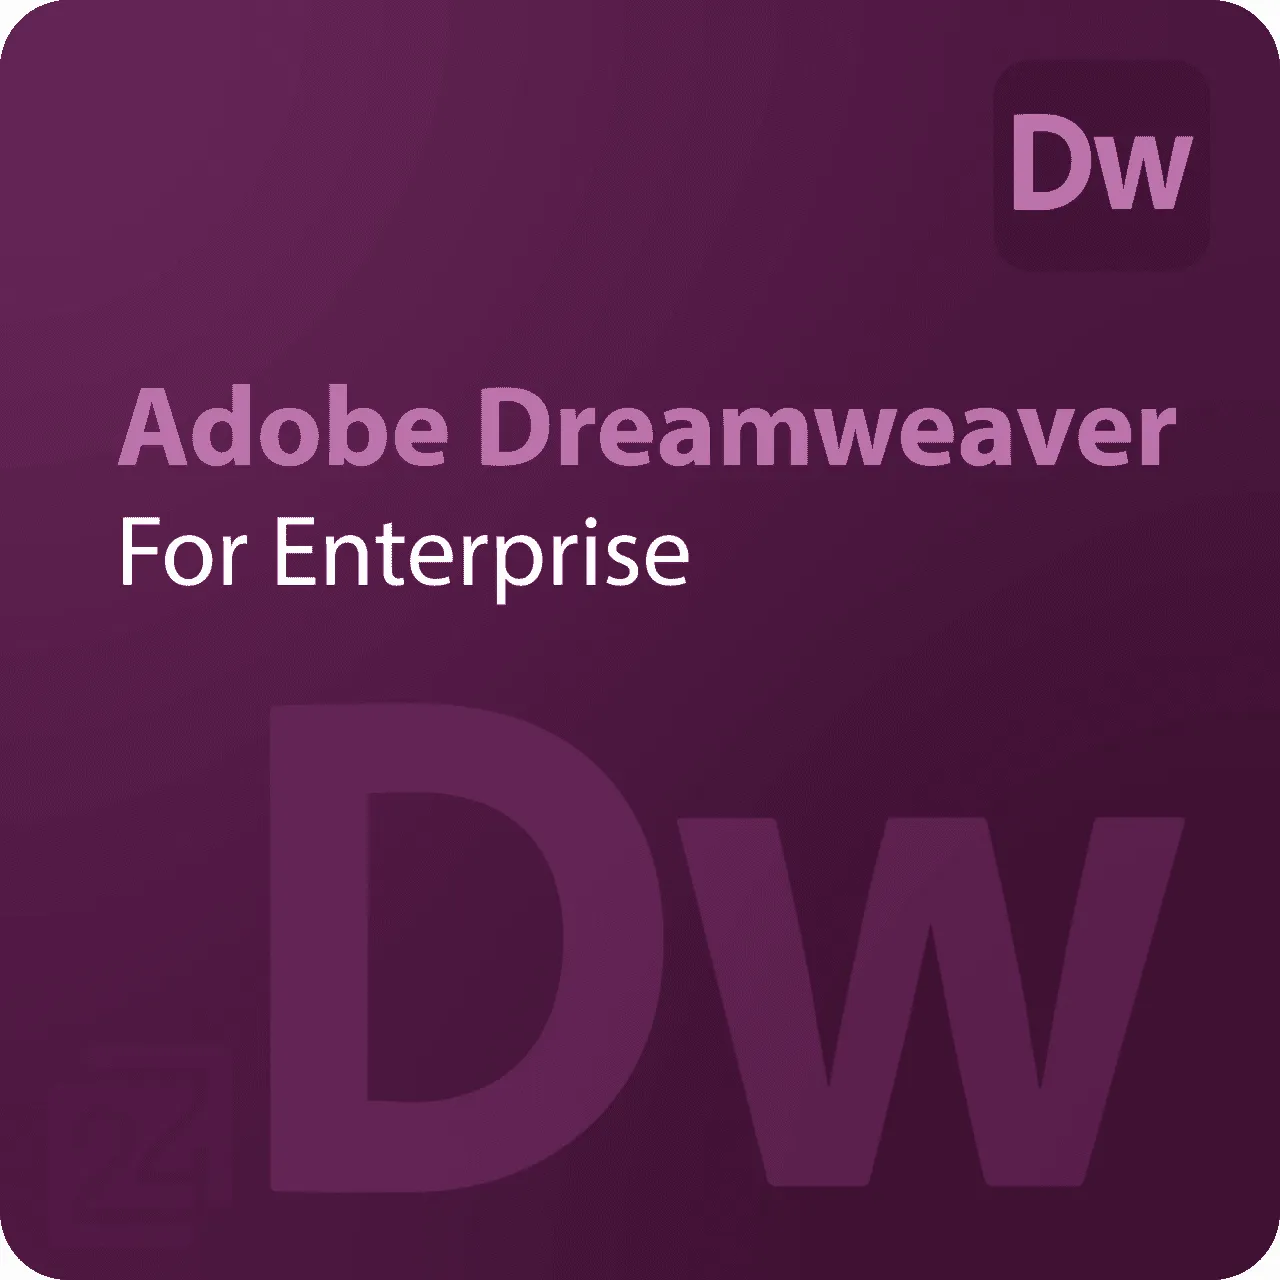 Adobe Dreamweaver for Enterprise